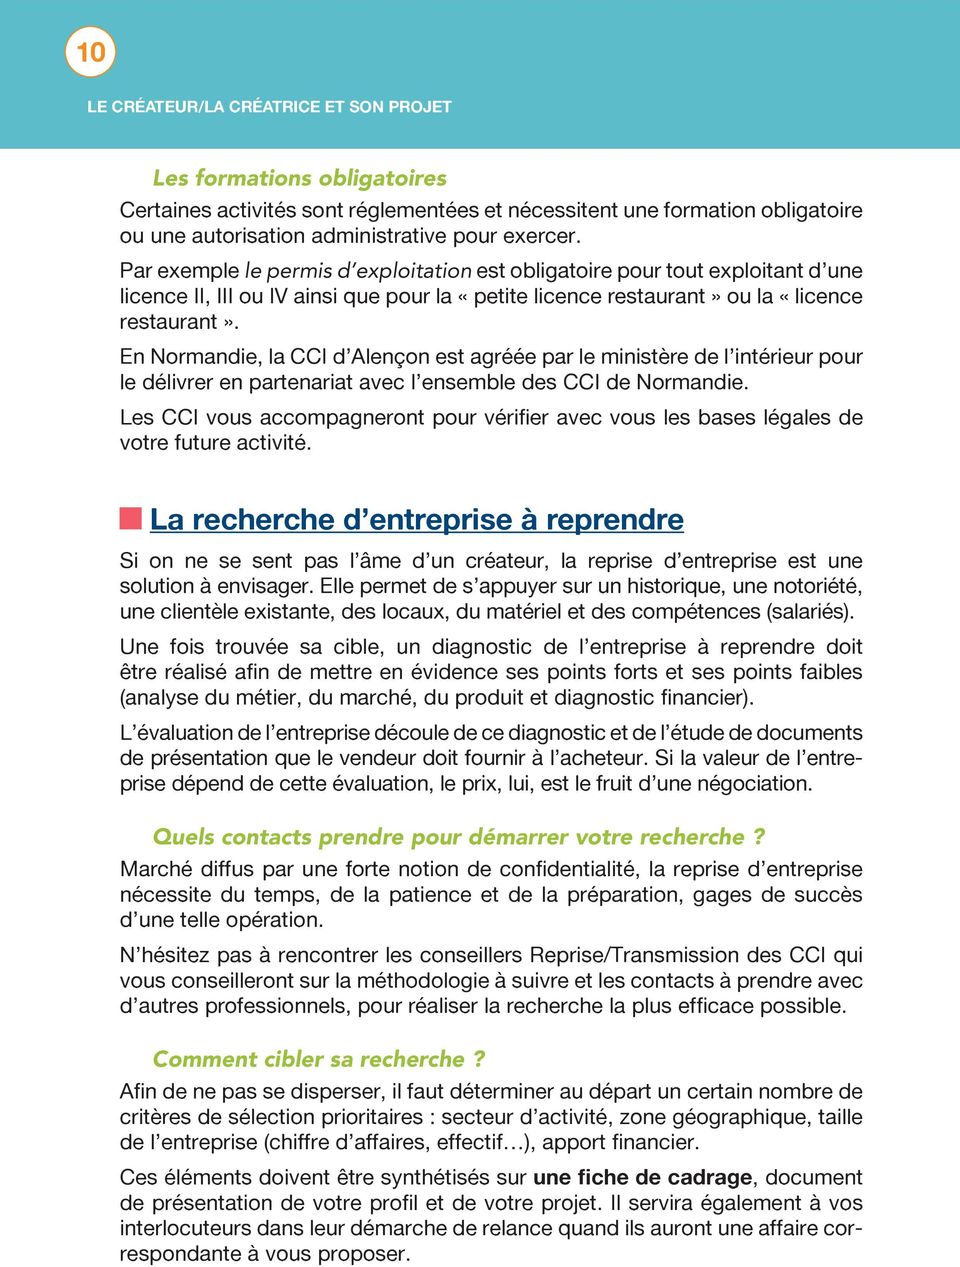 En Normandie, la CCI d Alençon est agréée par le ministère de l intérieur pour le délivrer en partenariat avec l ensemble des CCI de Normandie.